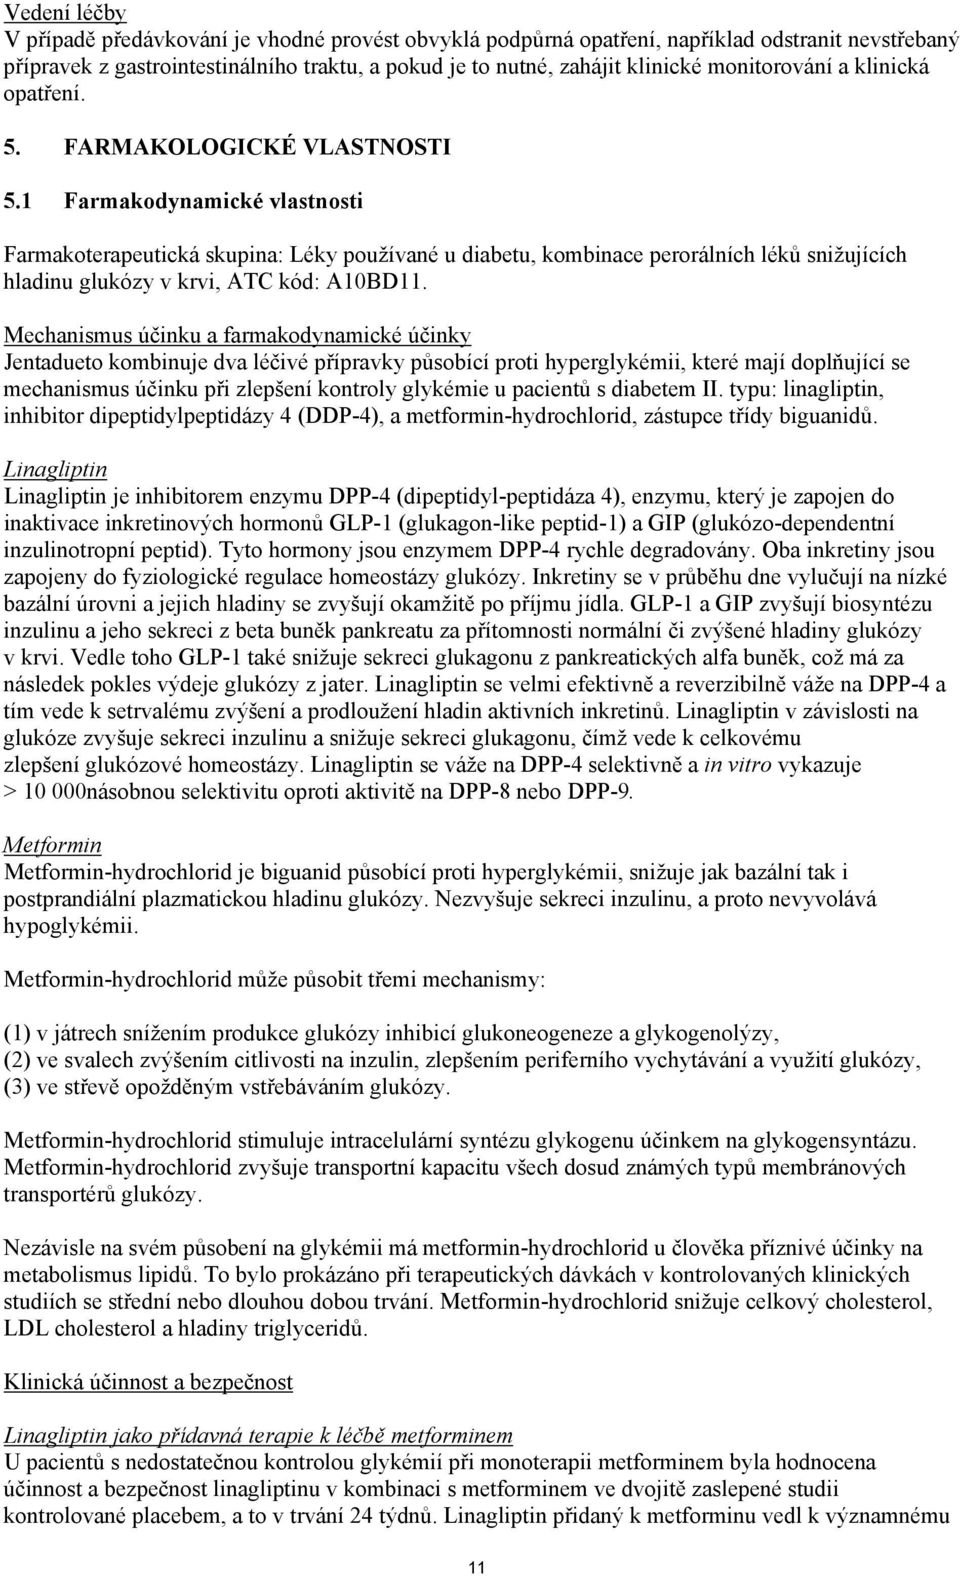 1 Farmakodynamické vlastnosti Farmakoterapeutická skupina: Léky používané u diabetu, kombinace perorálních léků snižujících hladinu glukózy v krvi, ATC kód: A10BD11.